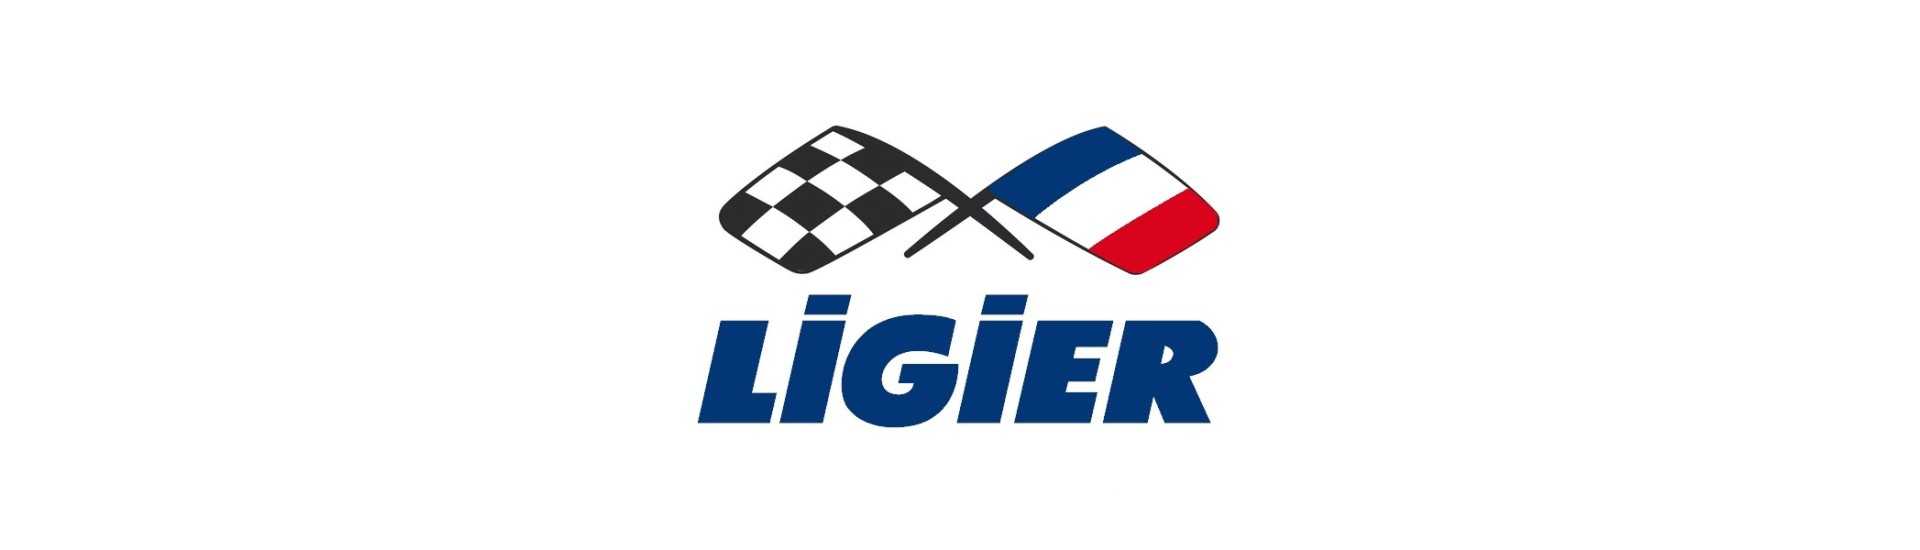 Radmutter zum besten Preis für ein Auto ohne Führerschein Ligier